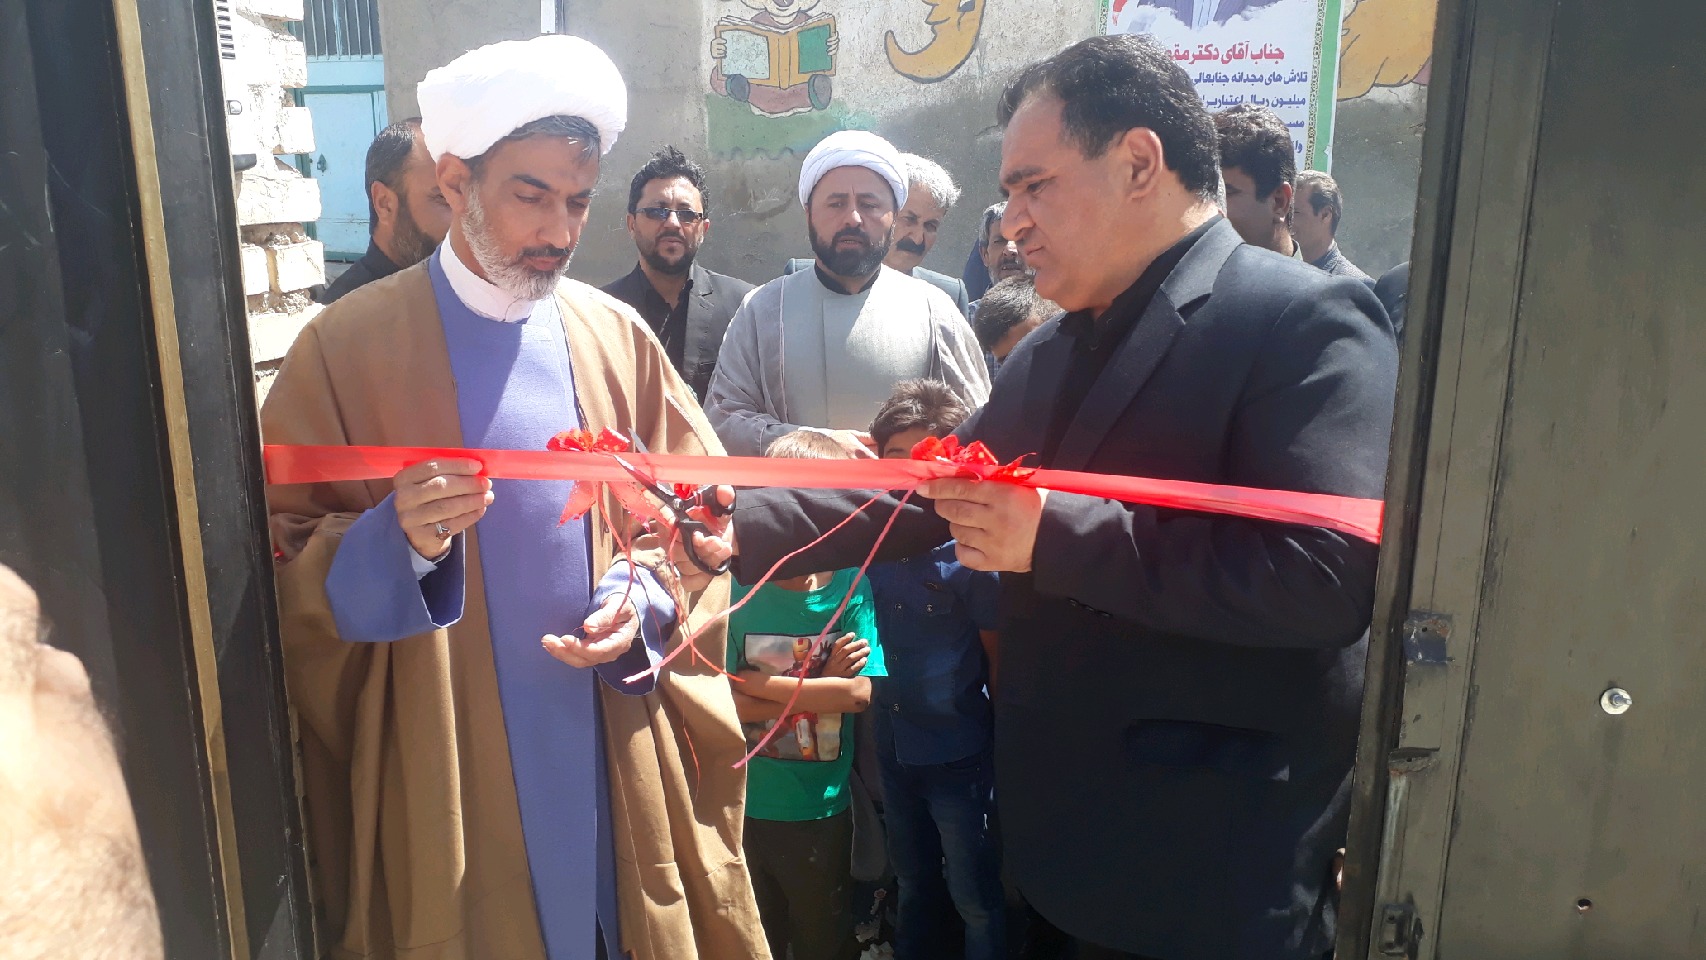 افتتاح خانه عالم در روداب